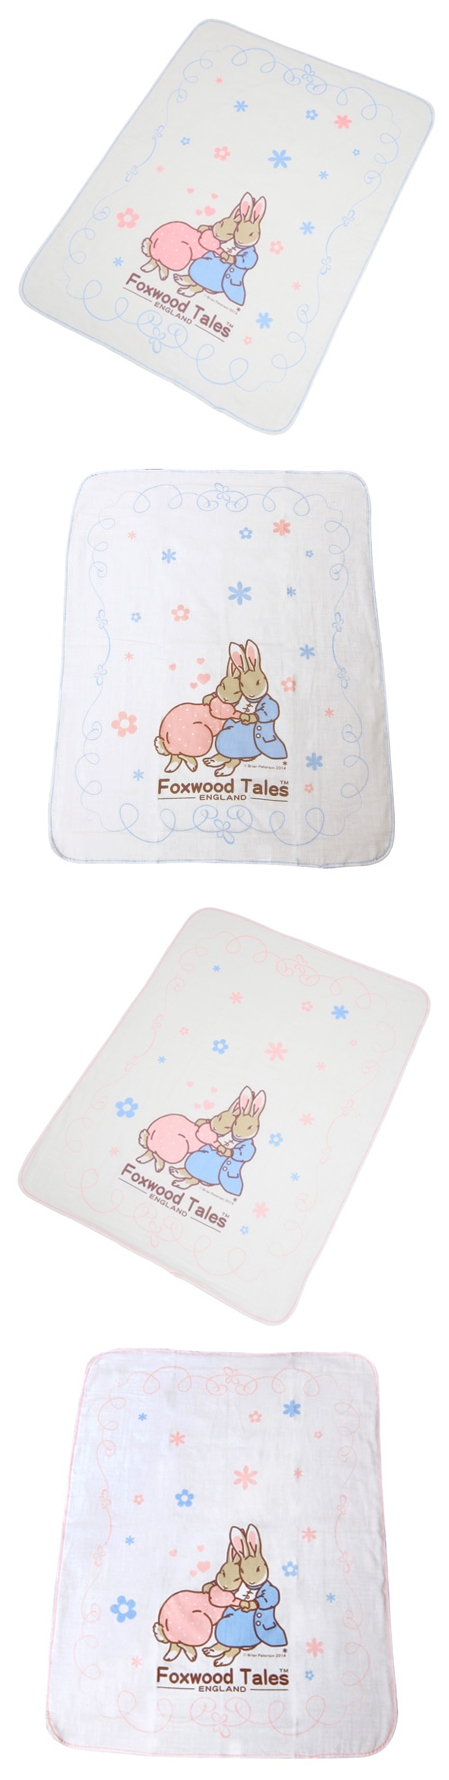 狐狸村傳奇-嬰兒紗布大浴巾(藍色/粉色)301-2064